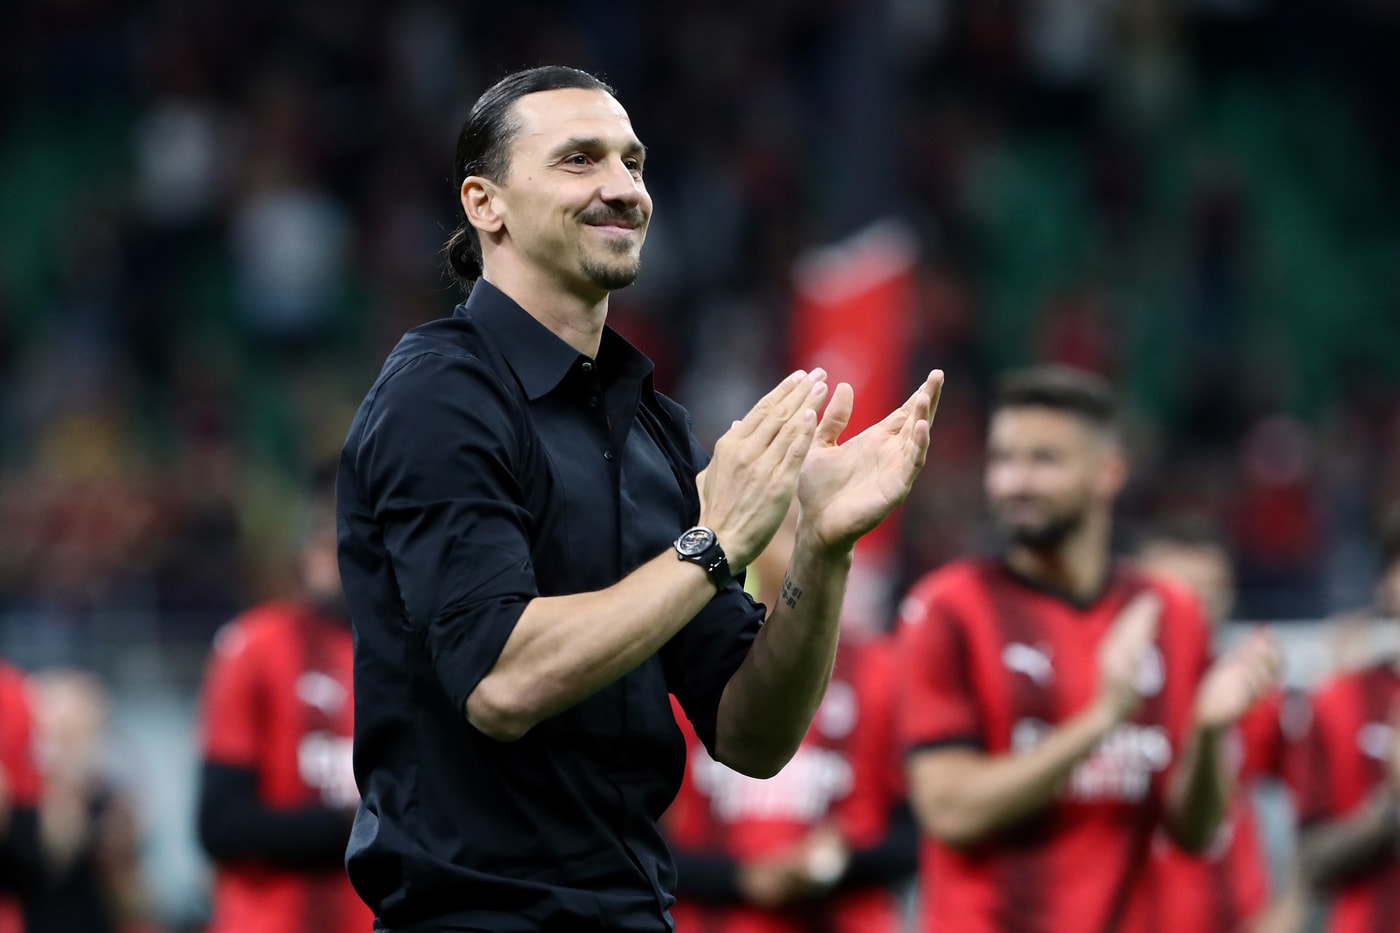 41 岁的传奇球星兹拉坦·伊布拉西莫维奇 Zlatan Ibrahimović 正式宣布退役